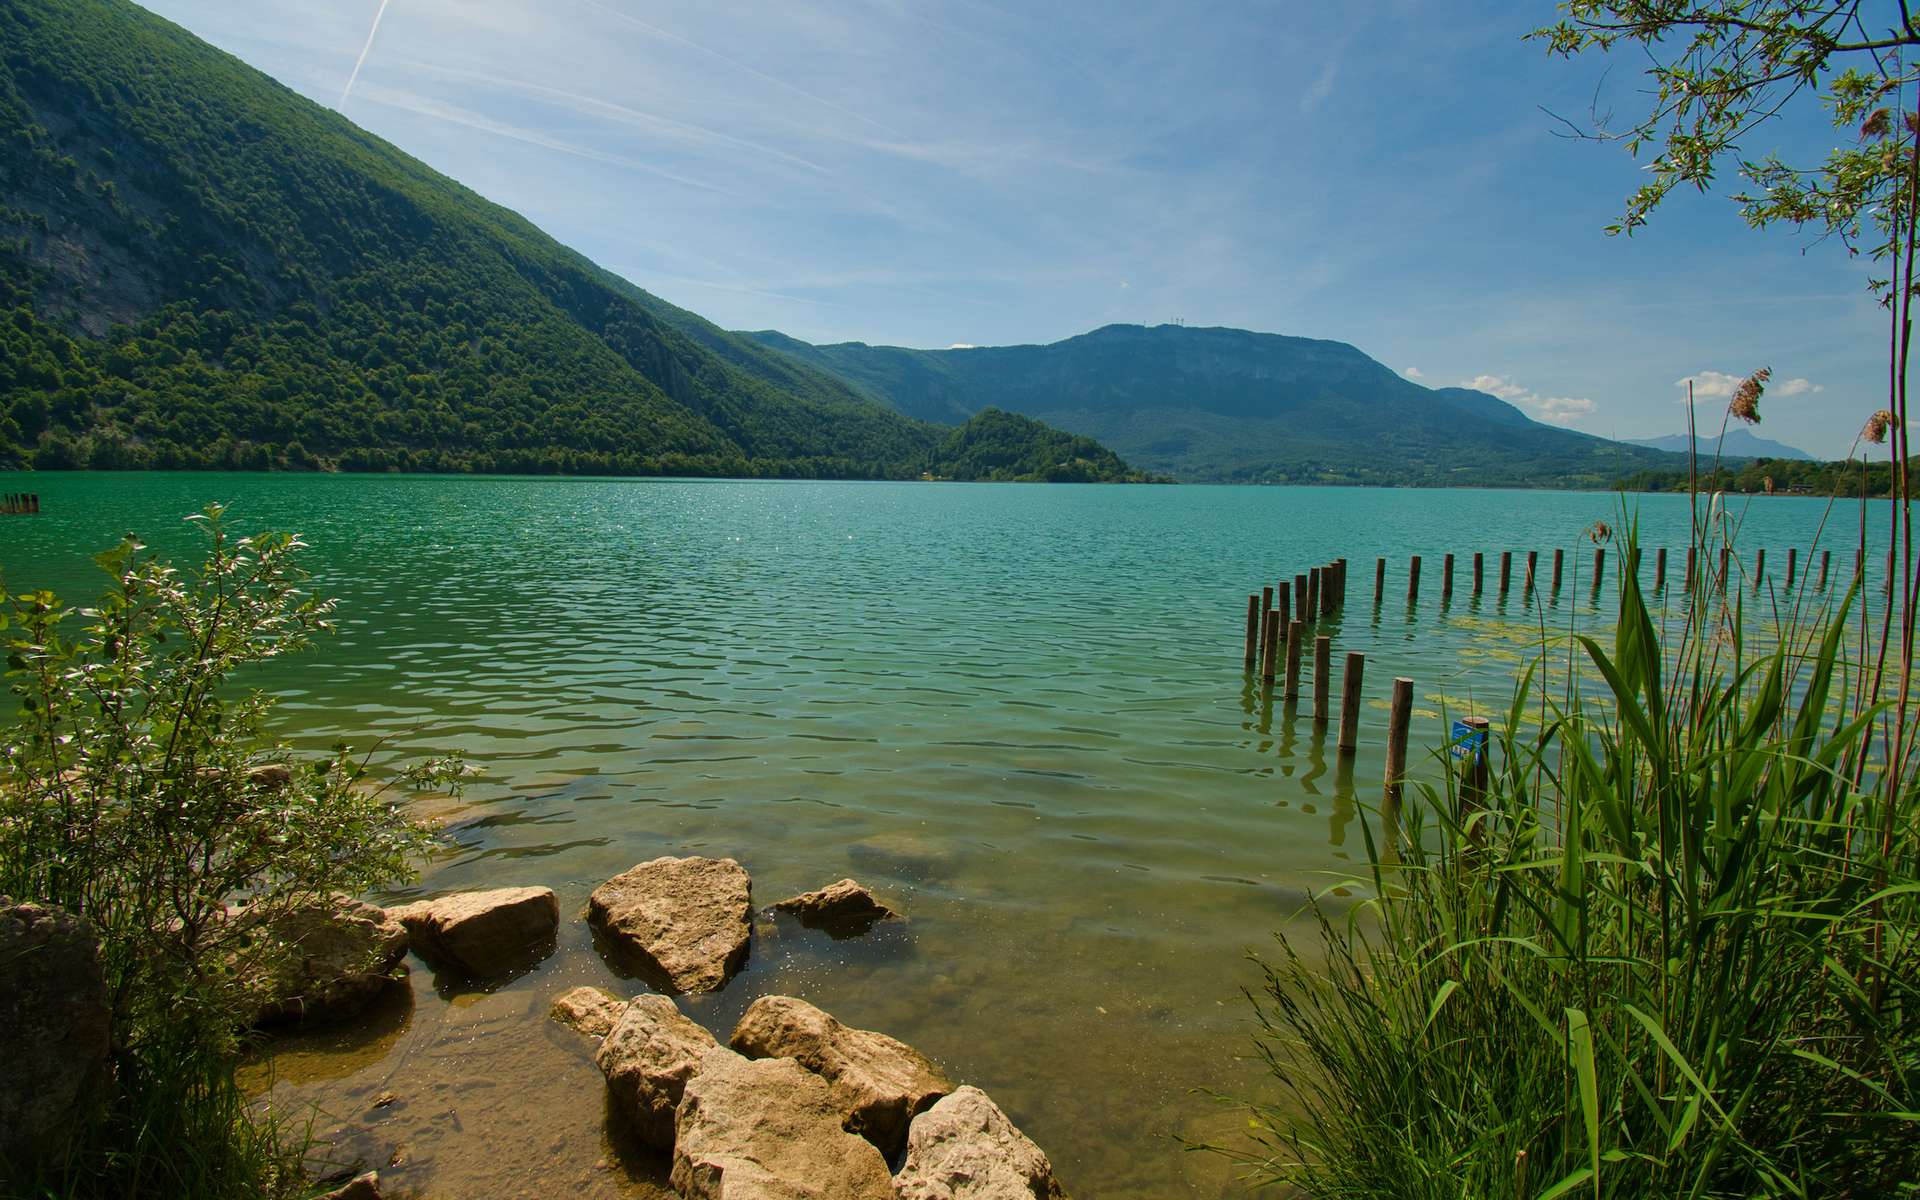 Un tsunami s'est produit dans ce paisible lac de Savoie il y a 11 700 ans